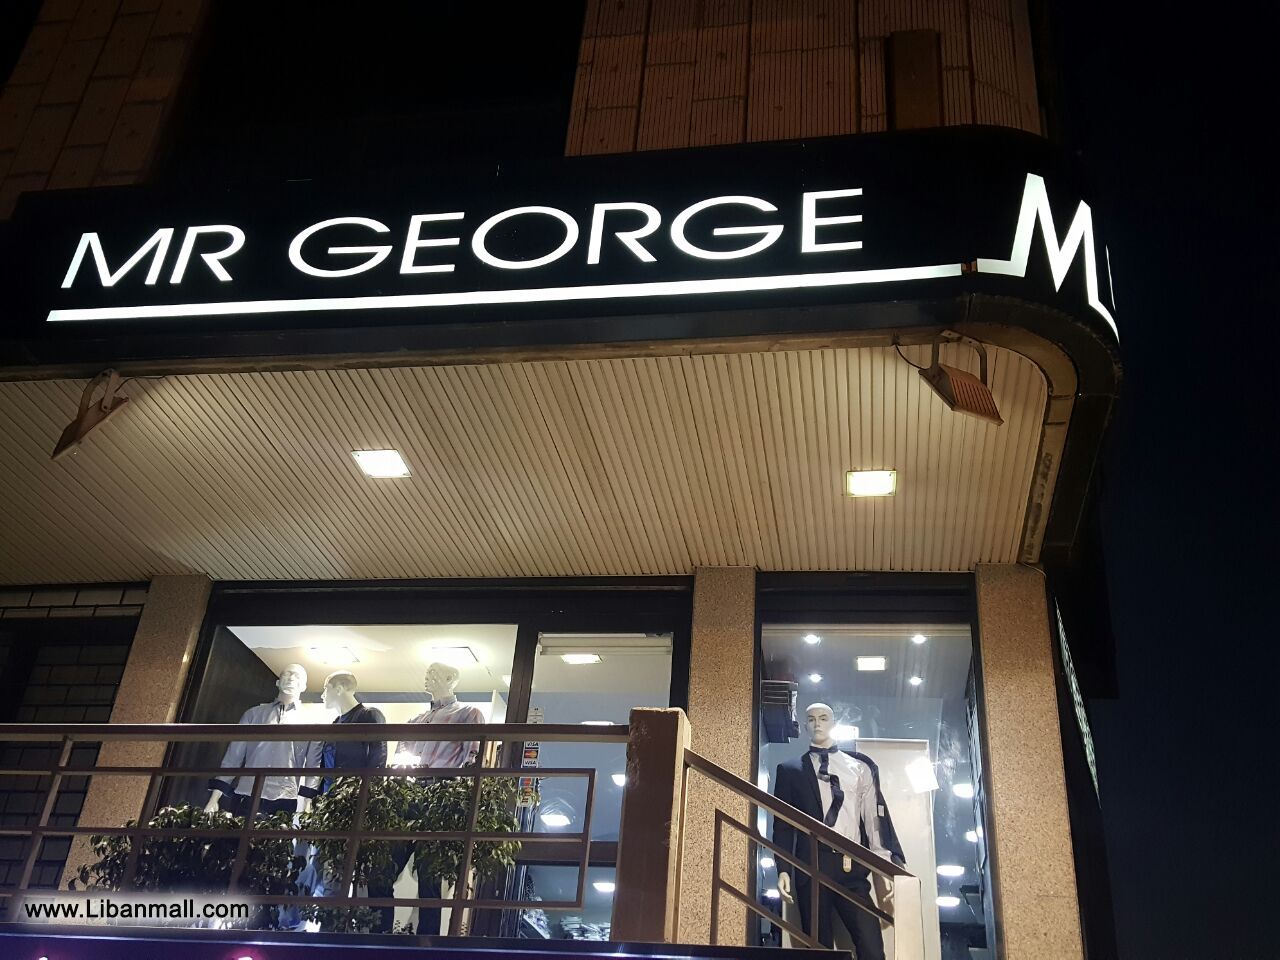 Mr George Boutique, men's wear, men's fashion, boutiques in Lebanon, men's clothing